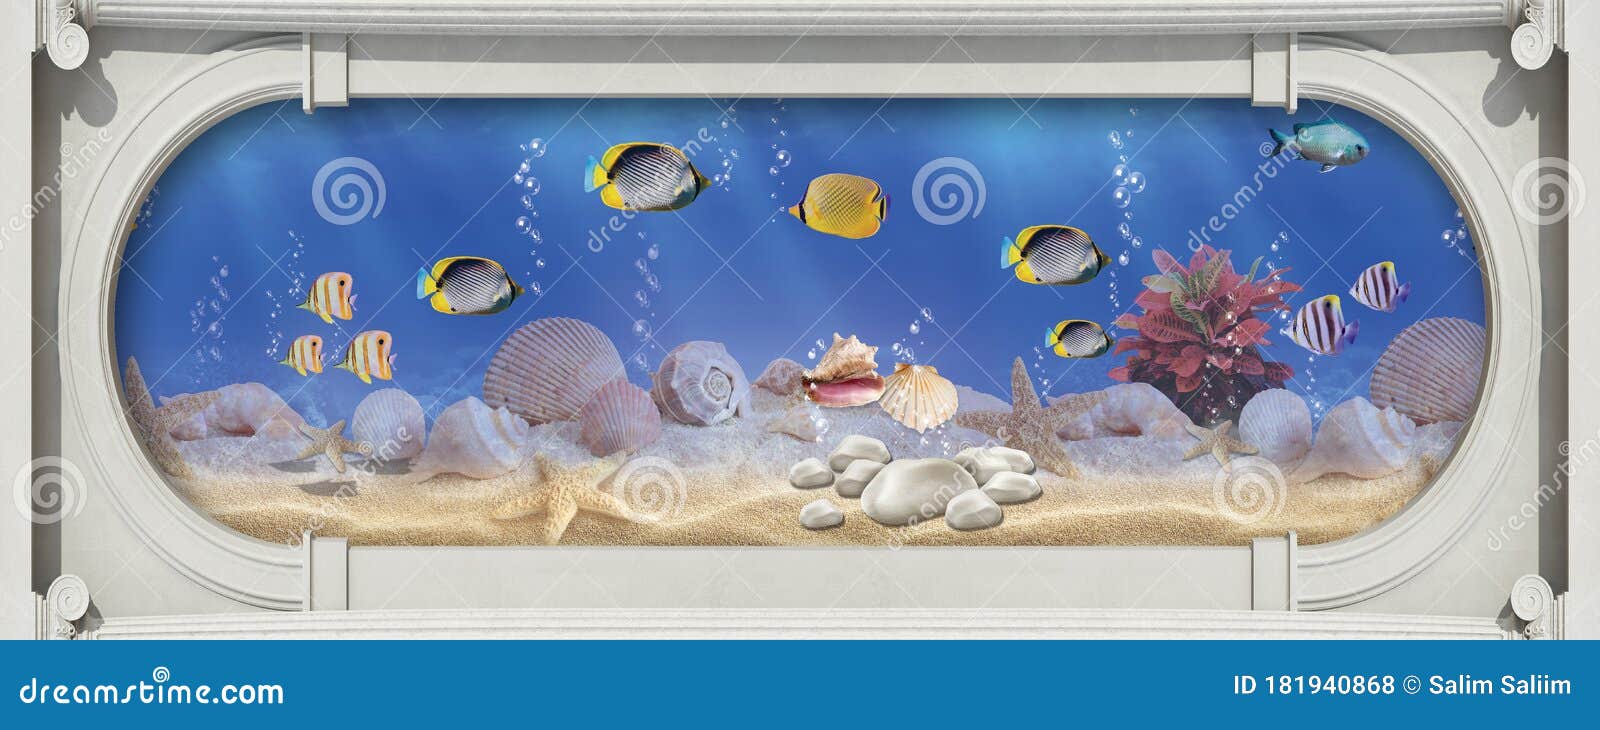 Aquarium Wallpaper 3d Pic Image Num 91